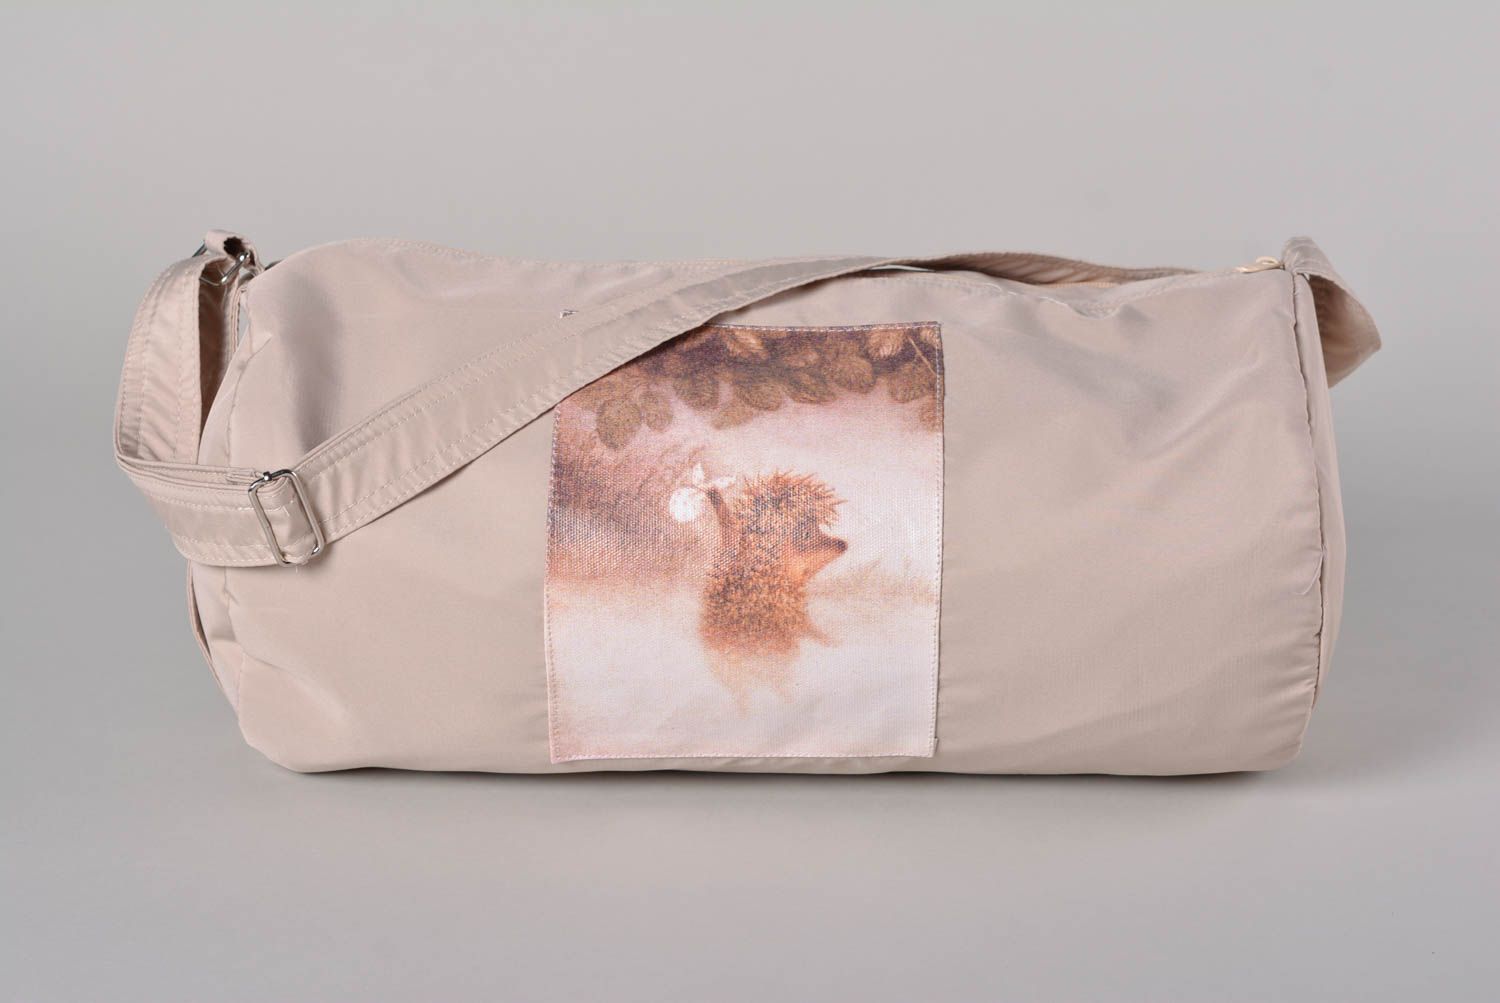 Сумка ручной работы женская сумка стильная оригинальная тканевая сумка Ежик фото 1